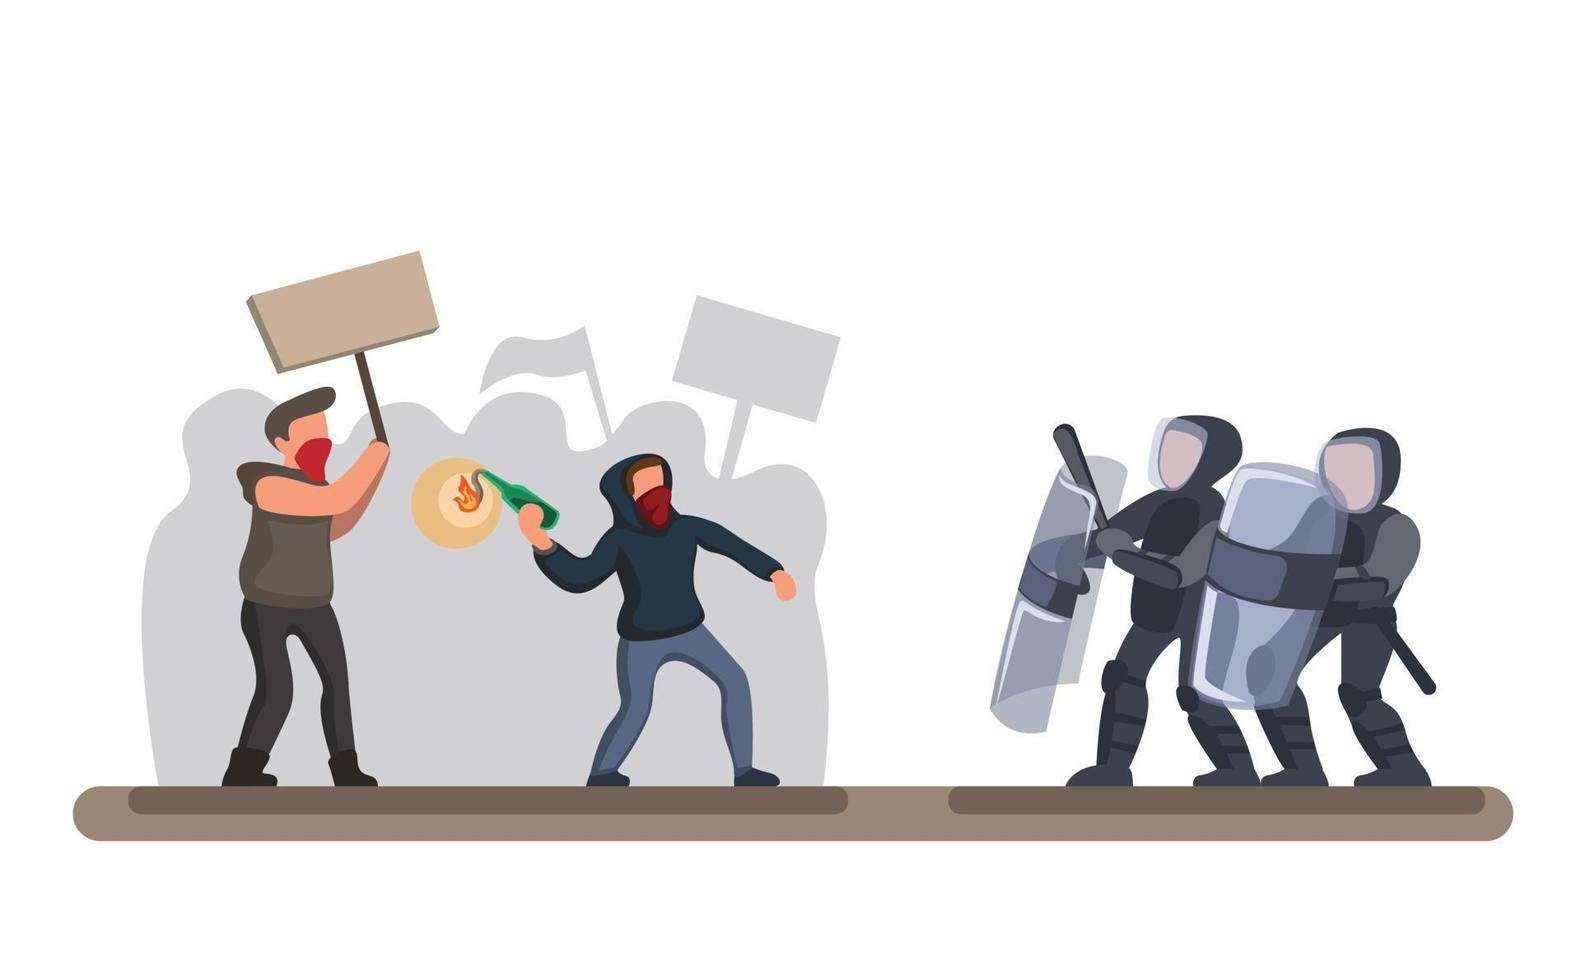 protesterende menigte tegen politie, man draagt hoodie en masker en gooit molotov naar de politie met schild en bescherming in cartoon vlakke afbeelding vector op witte achtergrond